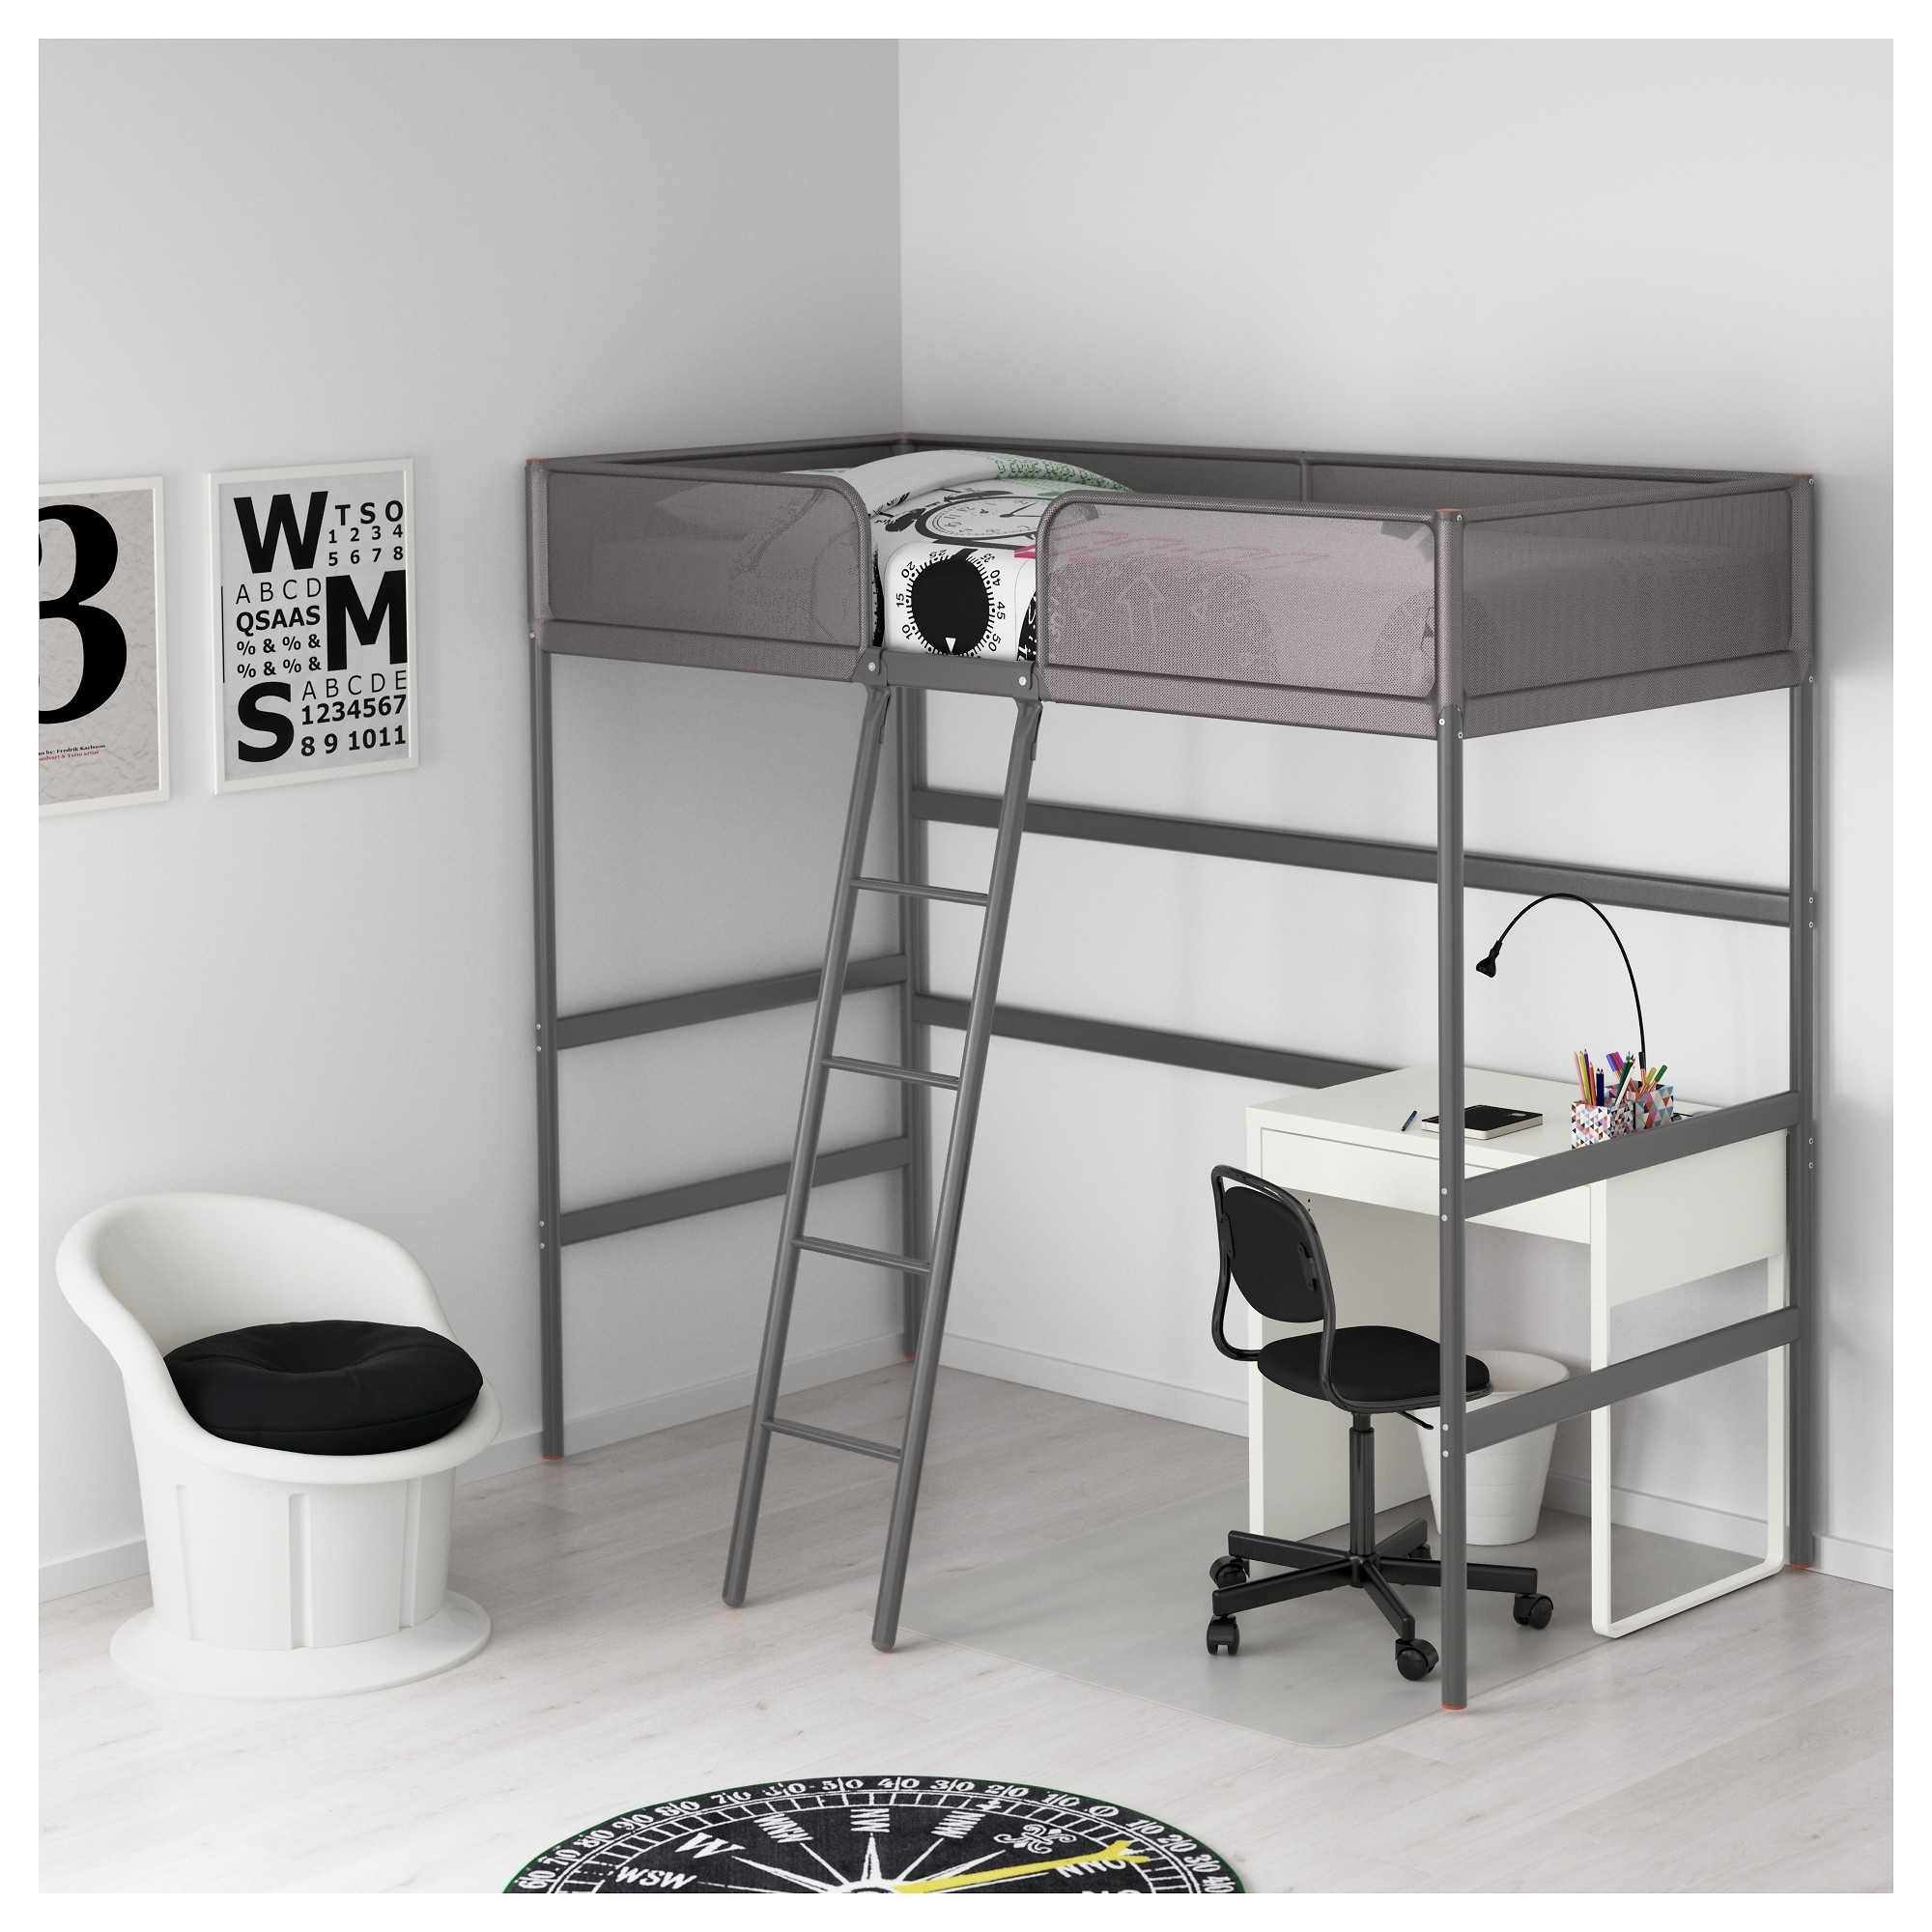 Ikea Loft Beds To Or Not In, Ikea Svarta Loft Bed Frame